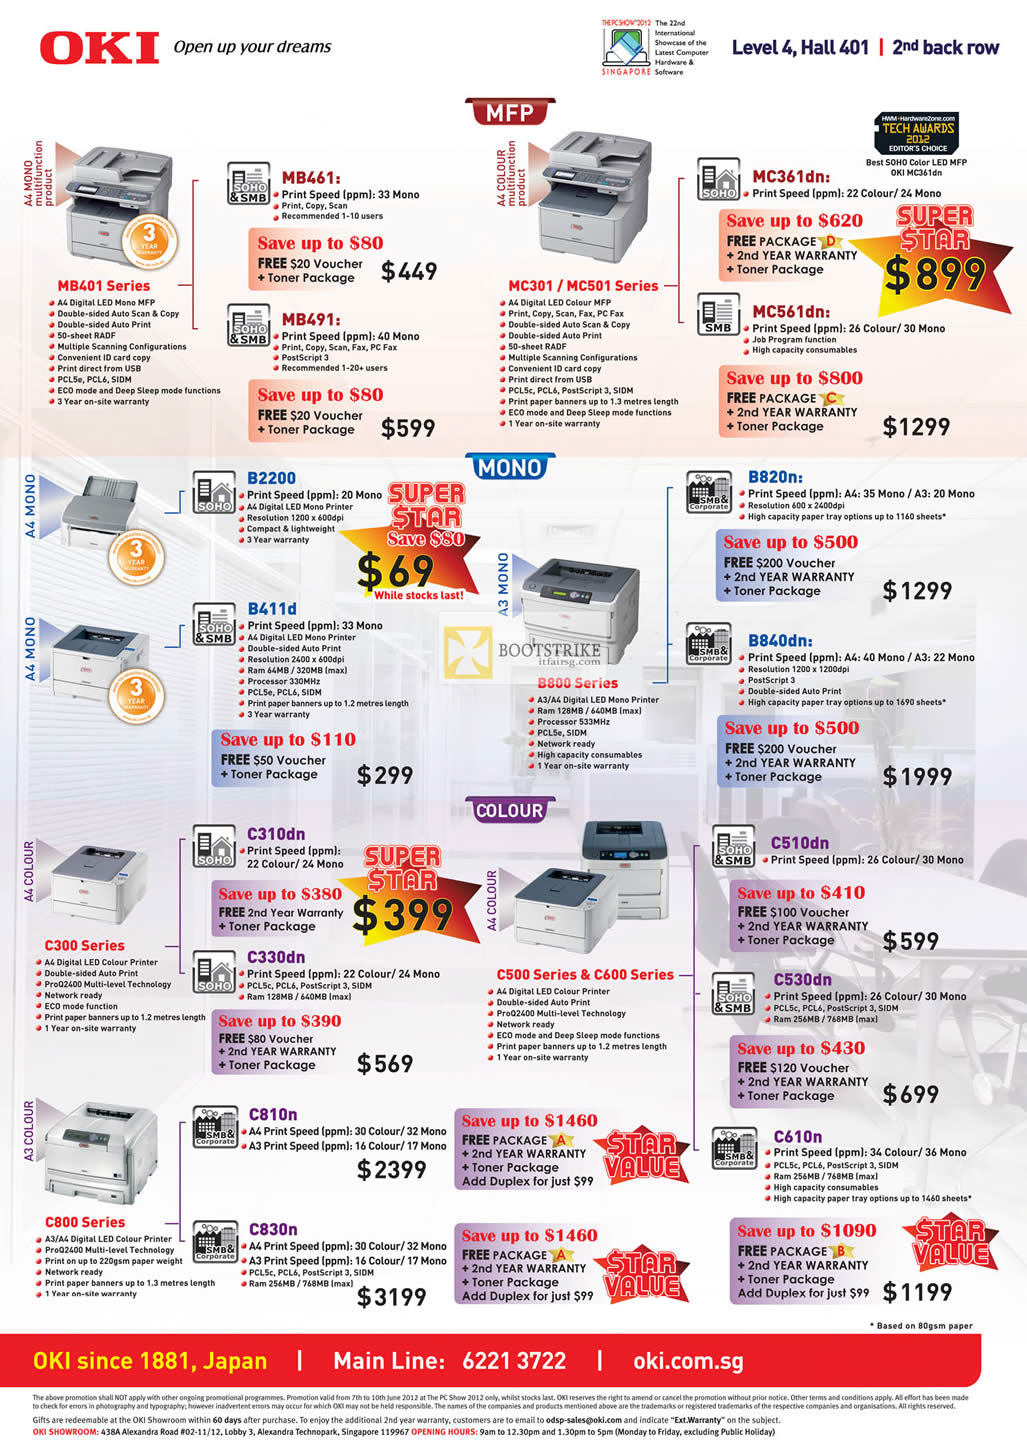 PC SHOW 2012 price list image brochure of OKI Printers MB461, MB491, MC361dn, MC561dn, B820n, B840dn, B2200, B411d, C310dn, C330dn, C530dn, C610n, C810n, C830n, C510dn